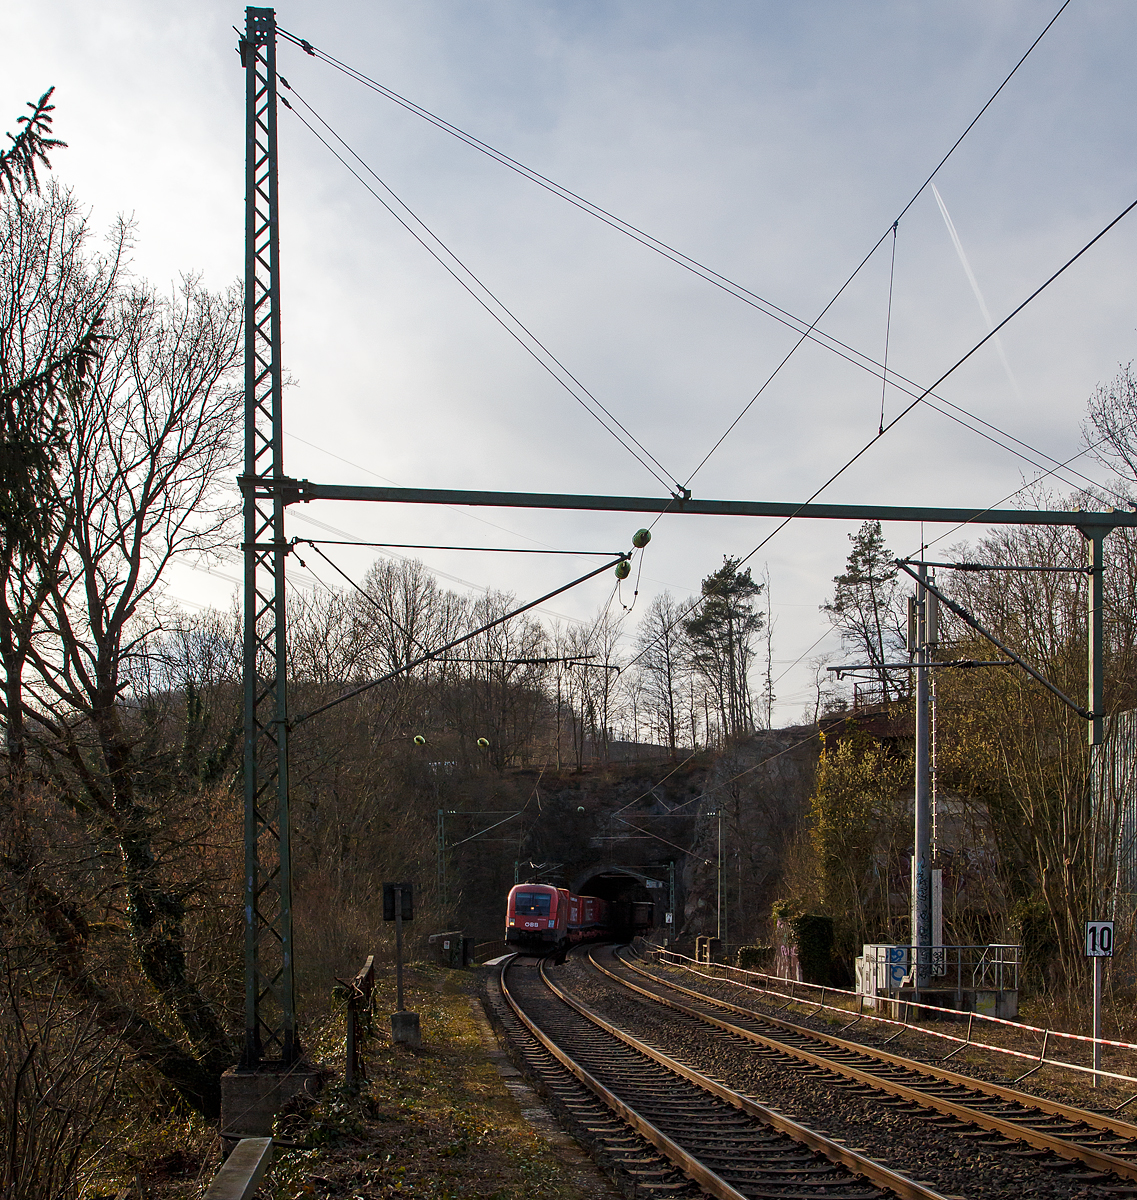 Der ÖBB Taurus 1016 041 (91 81 1016 032-5 A-ÖBB) fährt am 12.03.2022 mit einem  Winner -KLV-Zug bei Scheuerfeld (Sieg) durch den 32 m langen Mühlburg-Tunnel und über nachfolgende Siegbrücke in Richtung Siegen.

Der Taurus wurde 2001 vom Siemens-TS Werk in Linz unter der Fabriknummer 20389 gebaut und an die ÖBB - Österreichische Bundesbahnen geliefert.